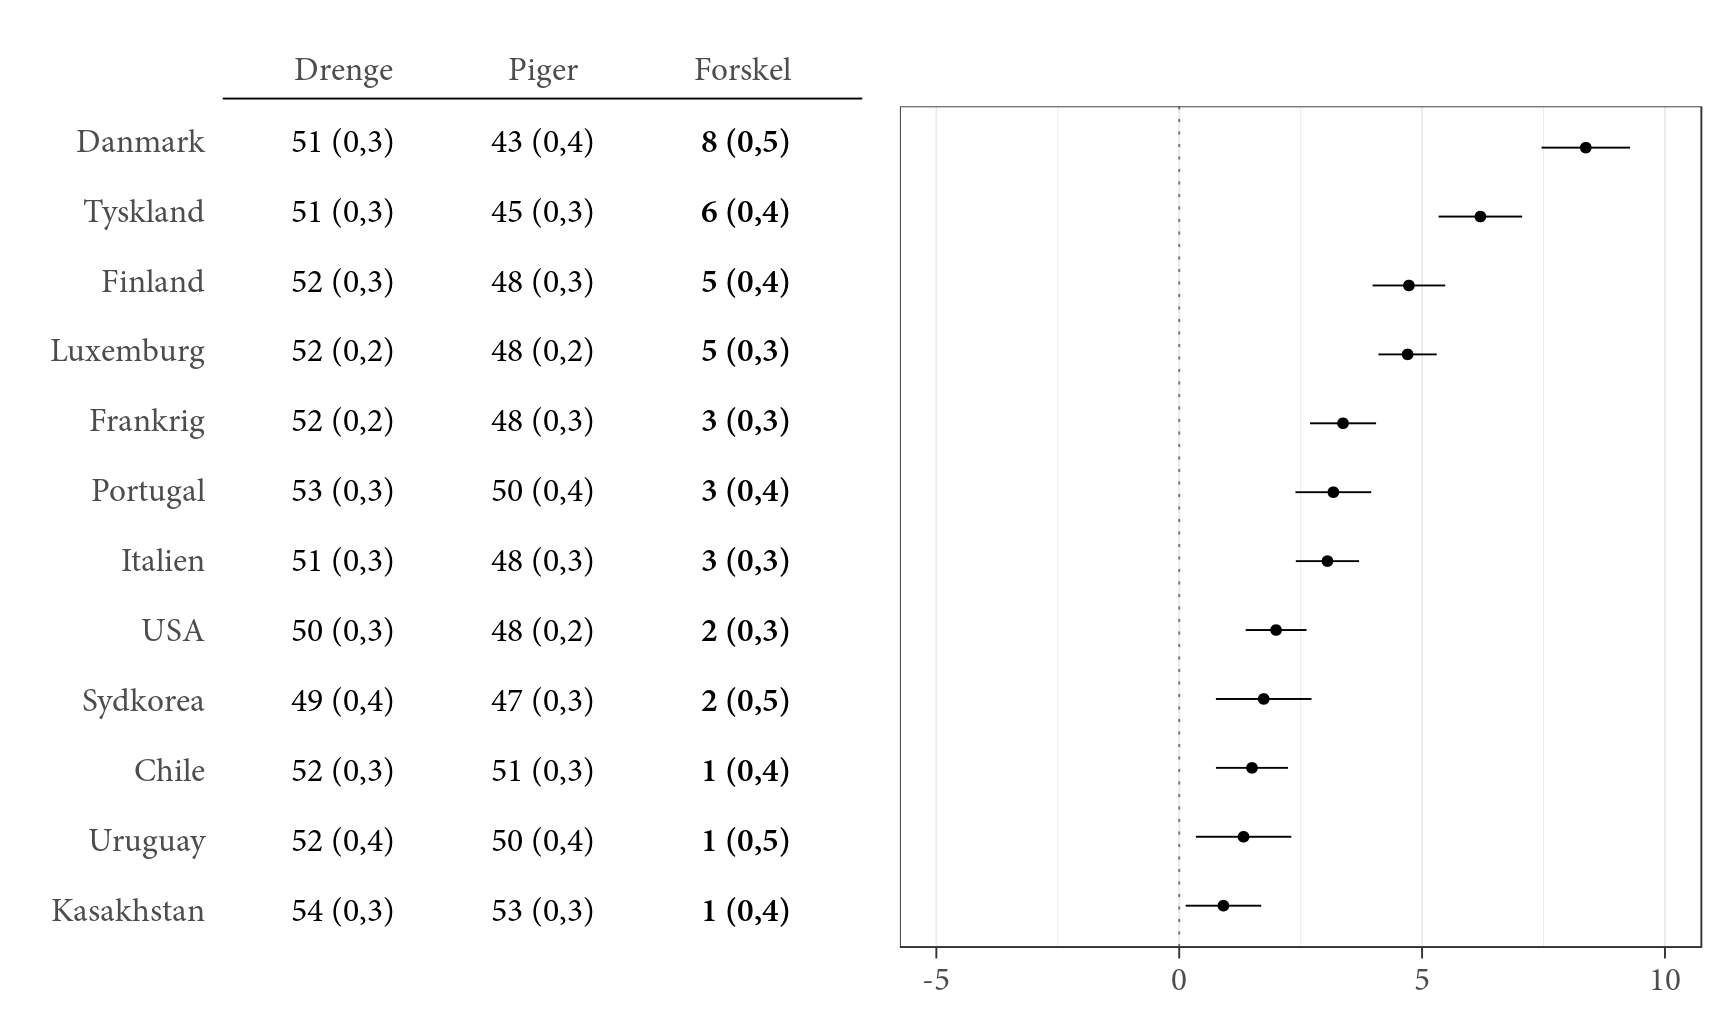 Kønsforskelle i tiltro til egne evner i forhold til tekniske aktiviteter med en computer opdelt på land. Tal viser gennemsnit på skalaen for tiltro til egne evner i forhold til tekniske aktiviteter med en computer. Standardfejl er angivet i parentes. Tal i kolonnen ’Forskel’ kan forekomme inkonsistent i forhold til andre tal i tabellen på grund af afrunding. Forskelle der er signifikante, er markeret med fed. Prikker viser den gennemsnitlige forskel mellem drenge og piger på skalaen. Positive værdier angiver at drenge i højere grad end piger har tiltro til egne evner. Horisontale linjer angiver et 95-procentkonfidensinterval. Landene er rangeret efter forskellen mellem drenge og piger.